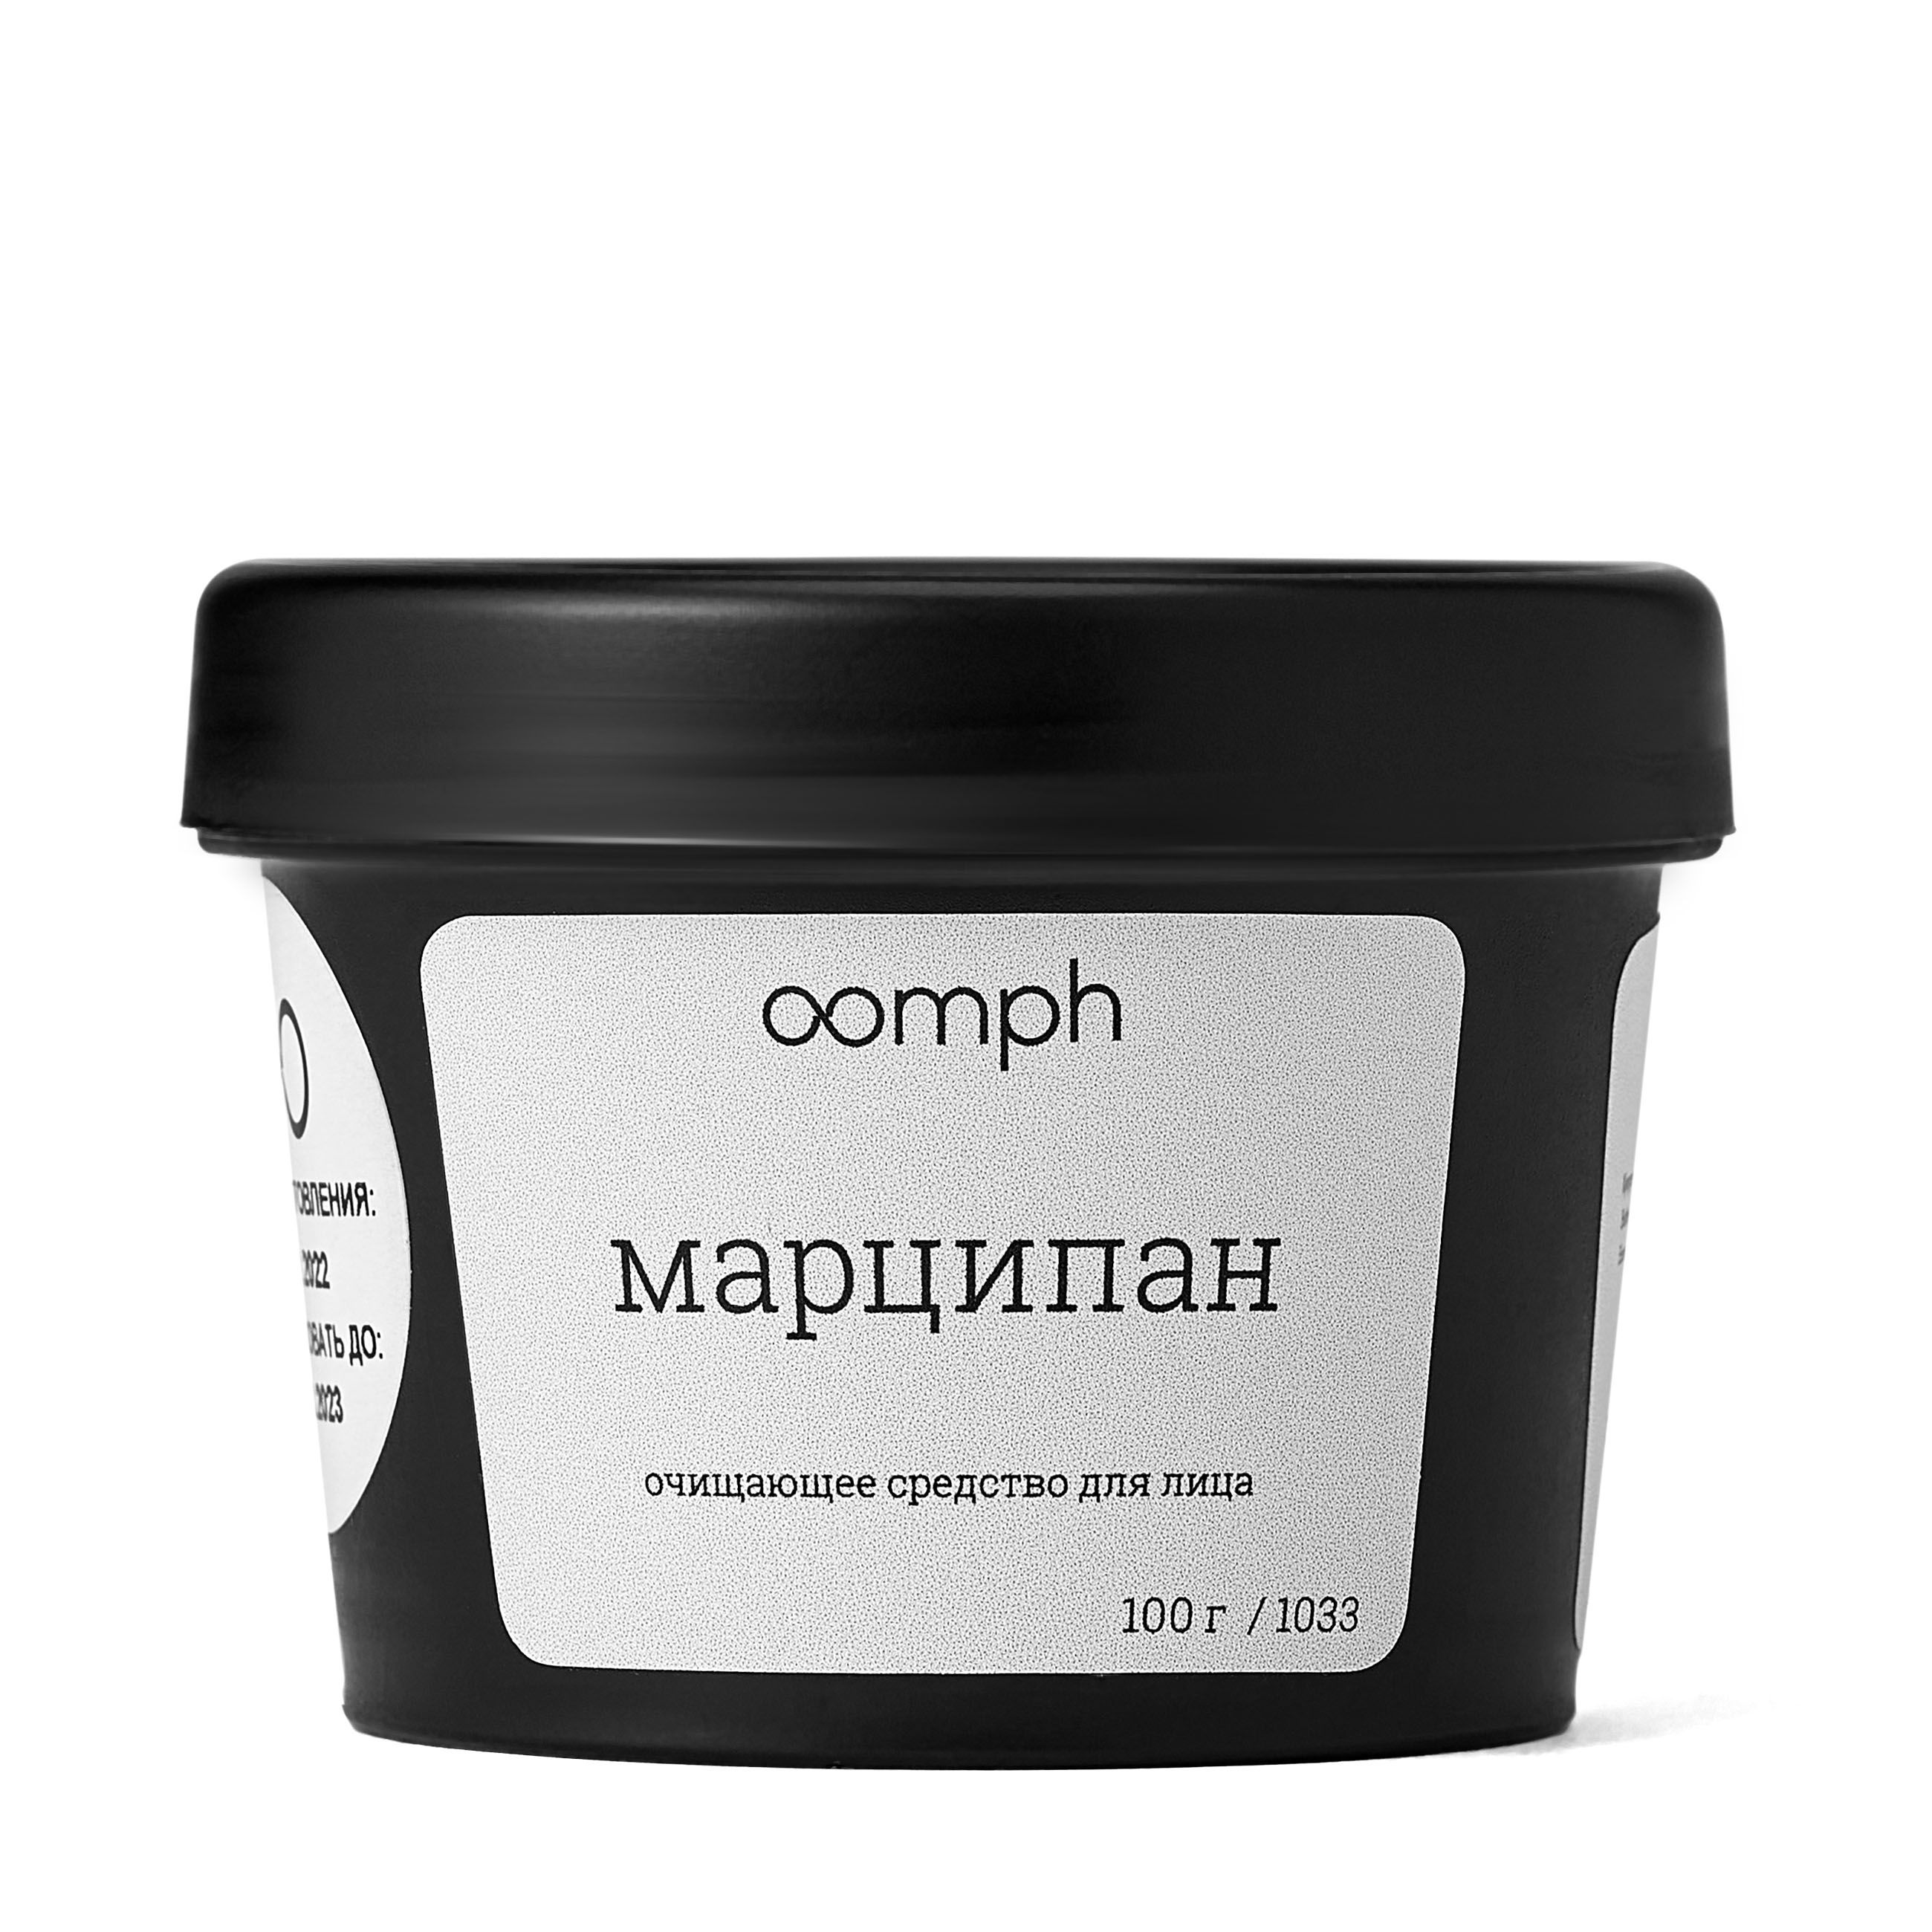 Очищающее средство для лица OOMPH Марципан 100г